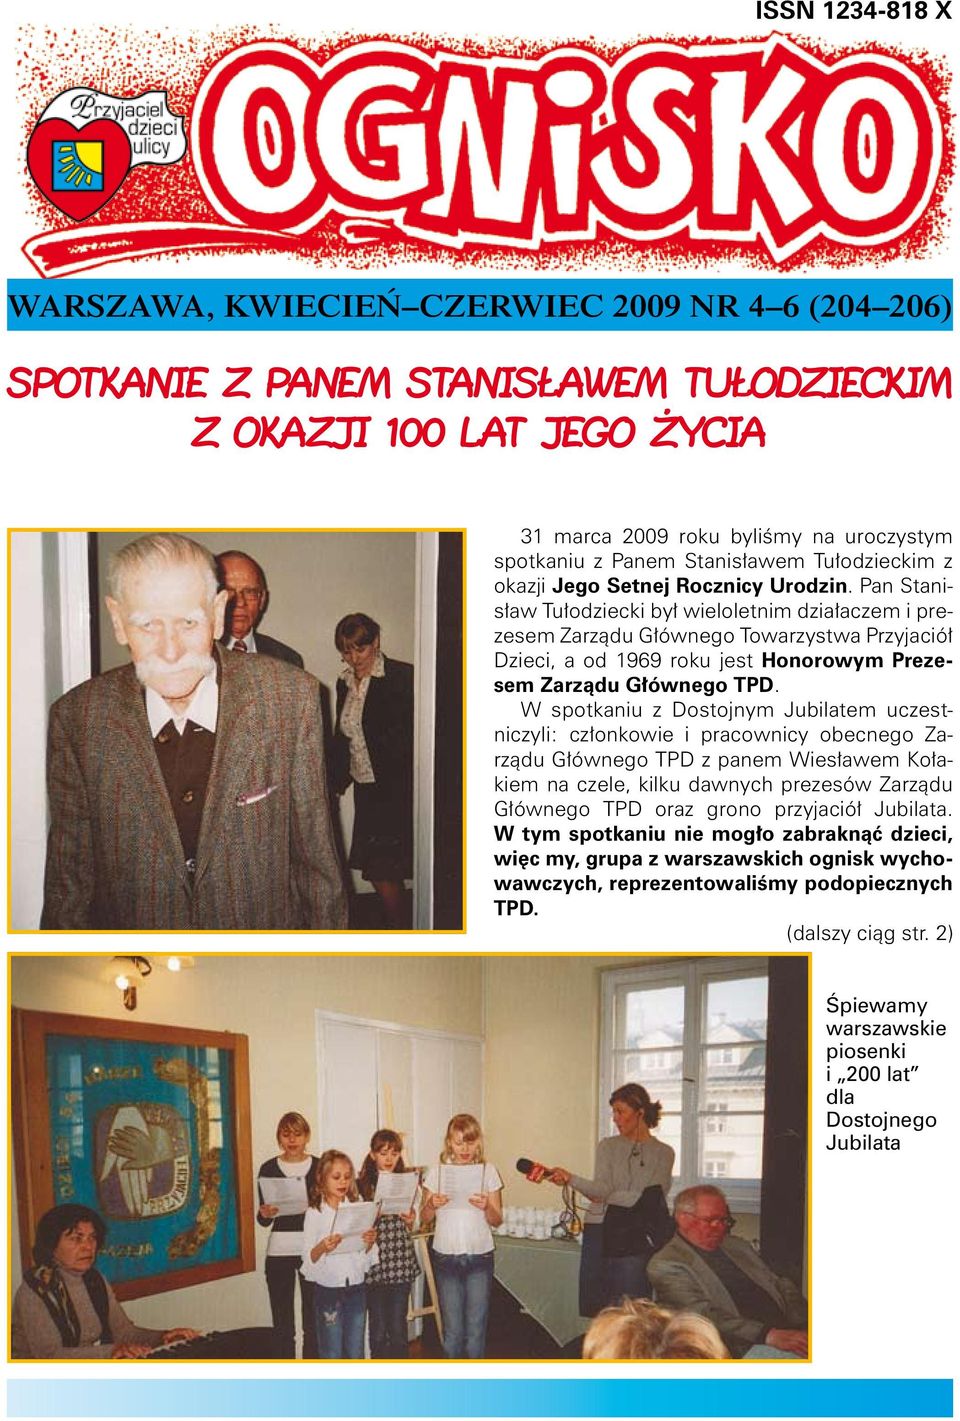 Pan Stanisław Tułodziecki był wieloletnim działaczem i prezesem Zarządu Głównego Towarzystwa Przyjaciół Dzieci, a od 1969 roku jest Honorowym Prezesem Zarządu Głównego TPD.